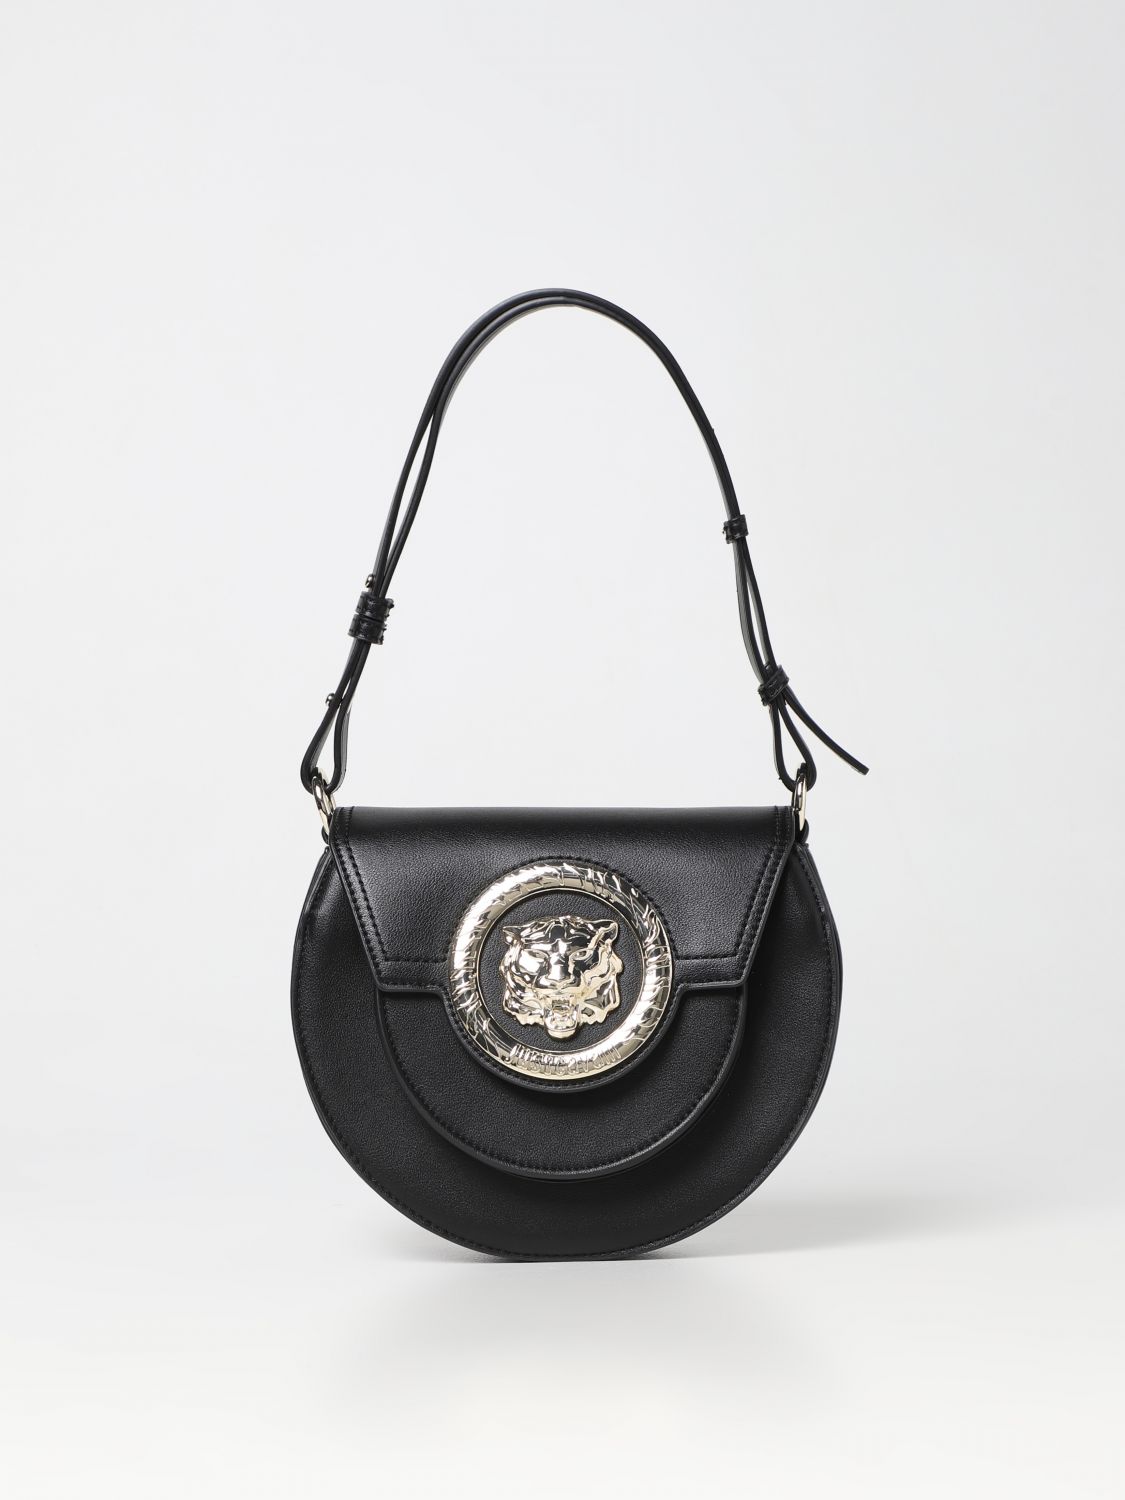 Just Cavalli Handbag JUST CAVALLI Woman colour Black